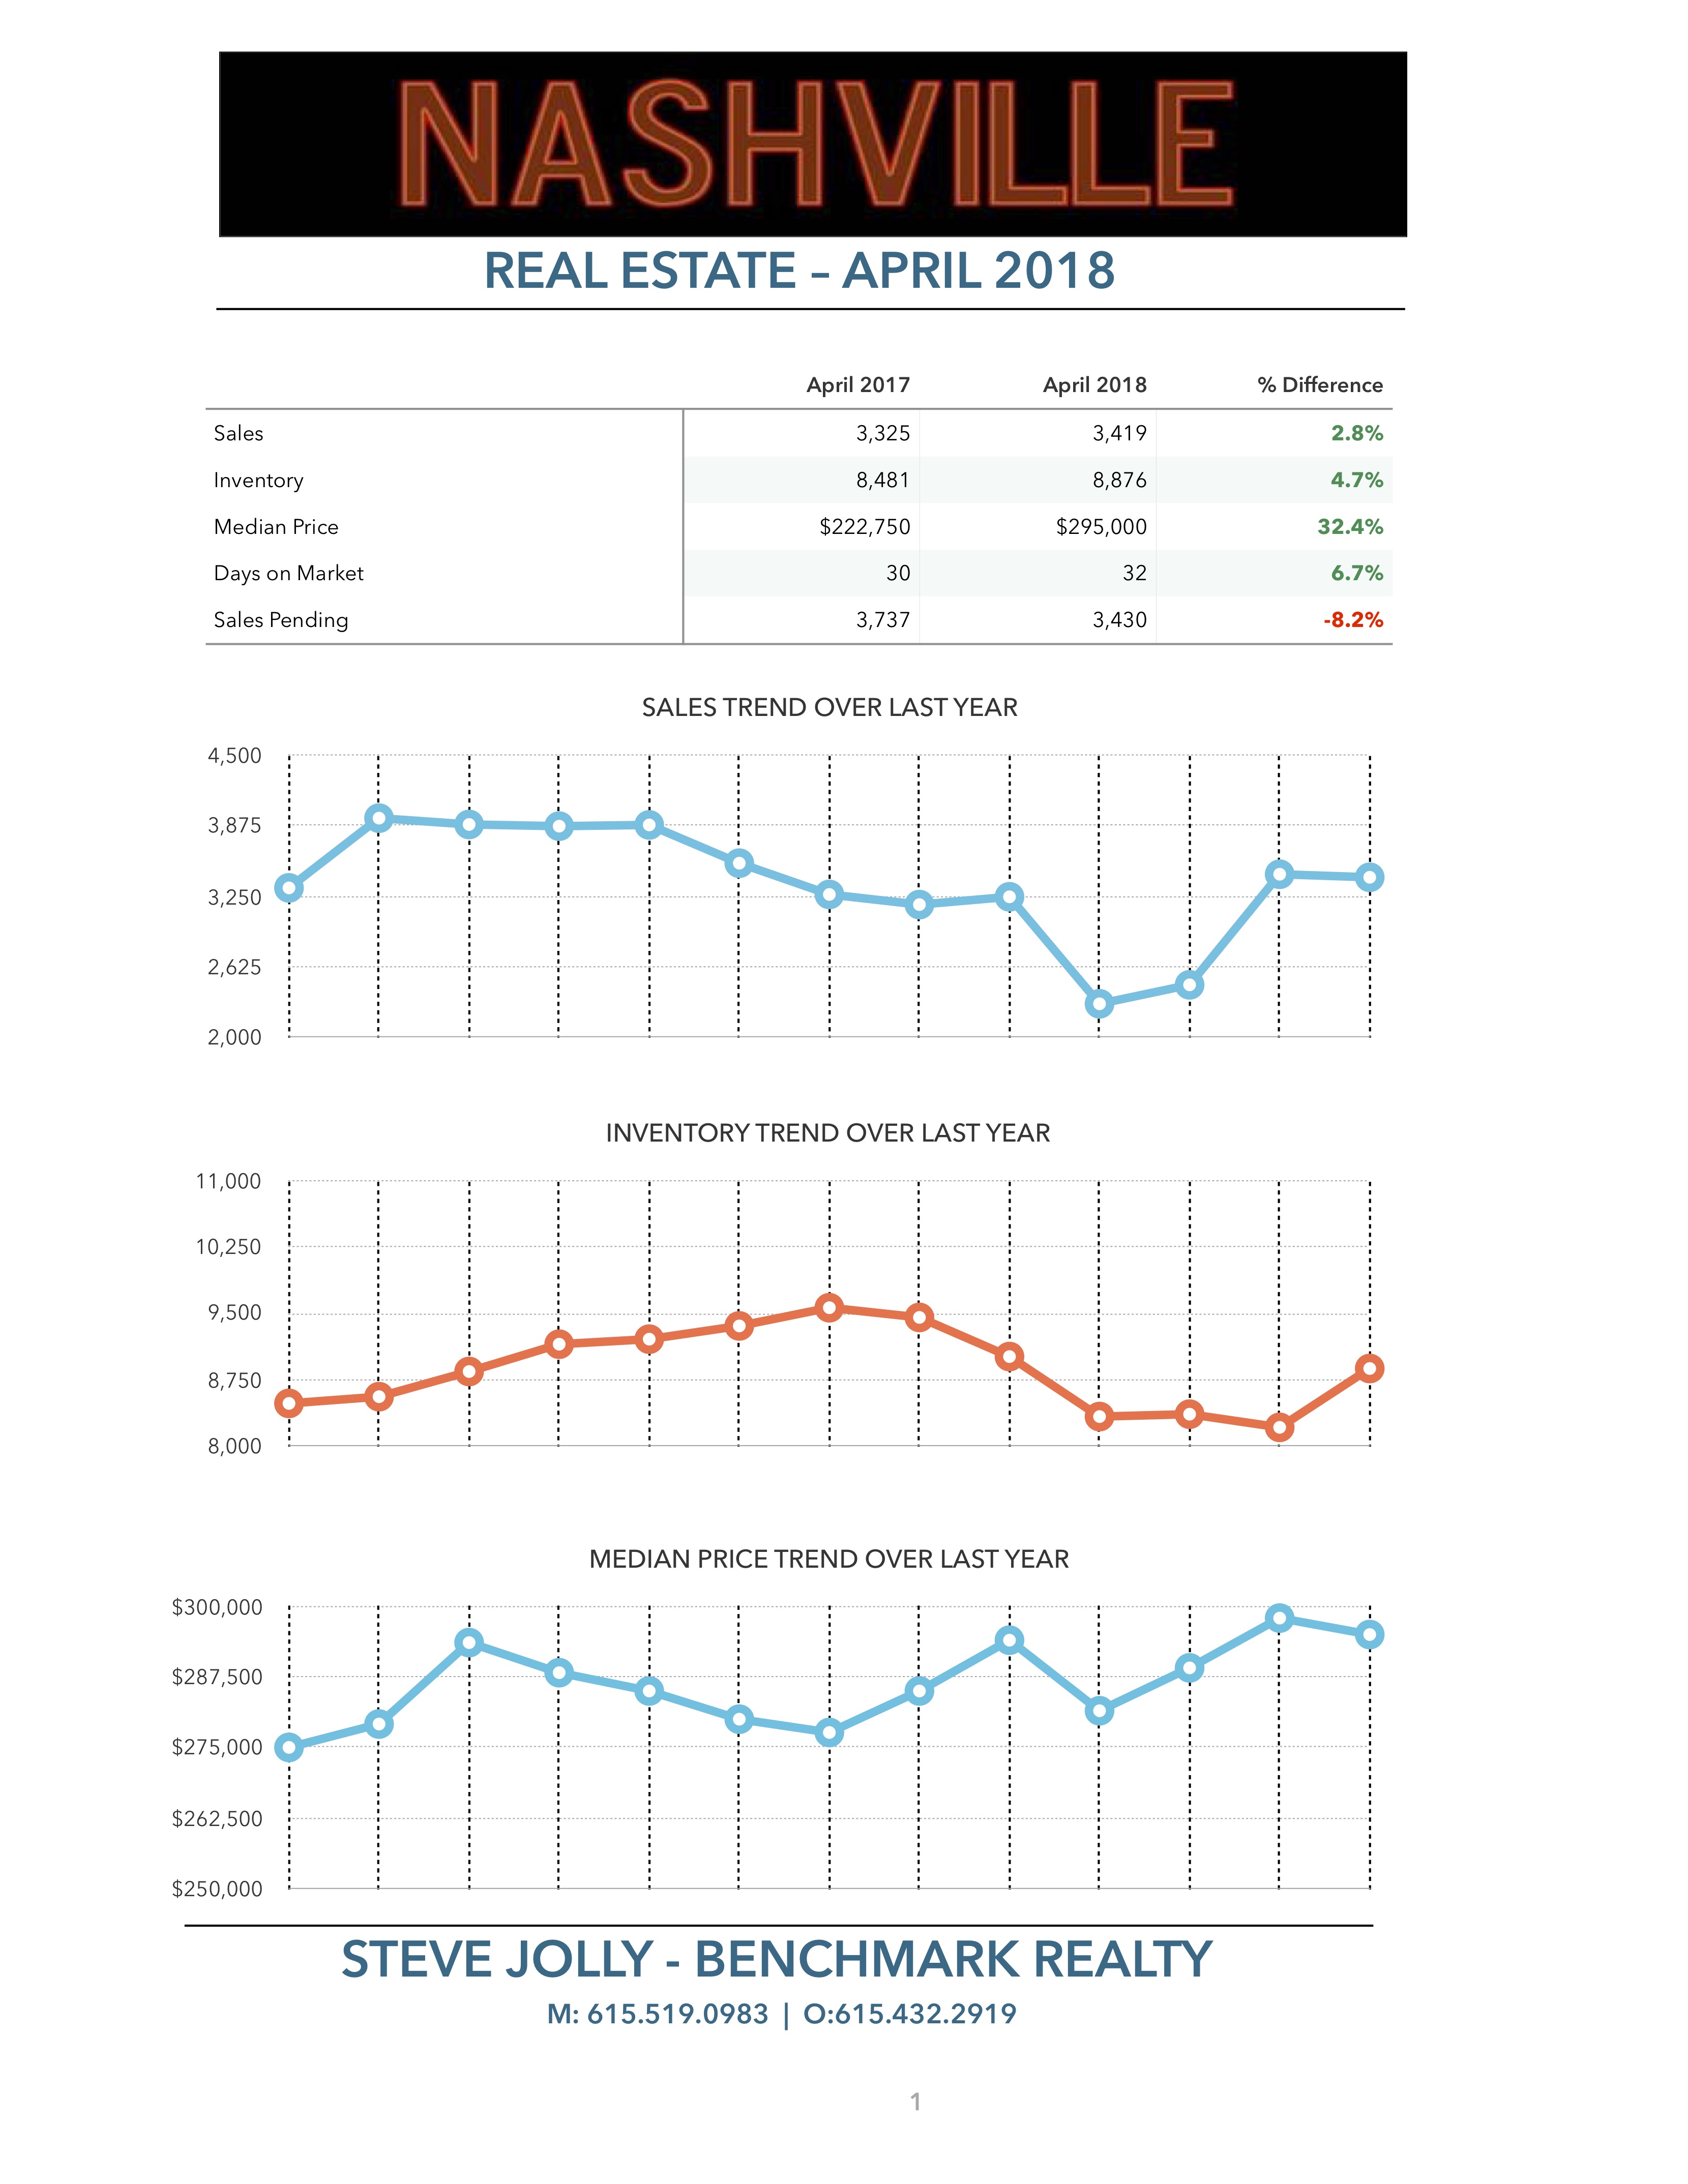 Nashville Real Estate Market Trends - April 2018